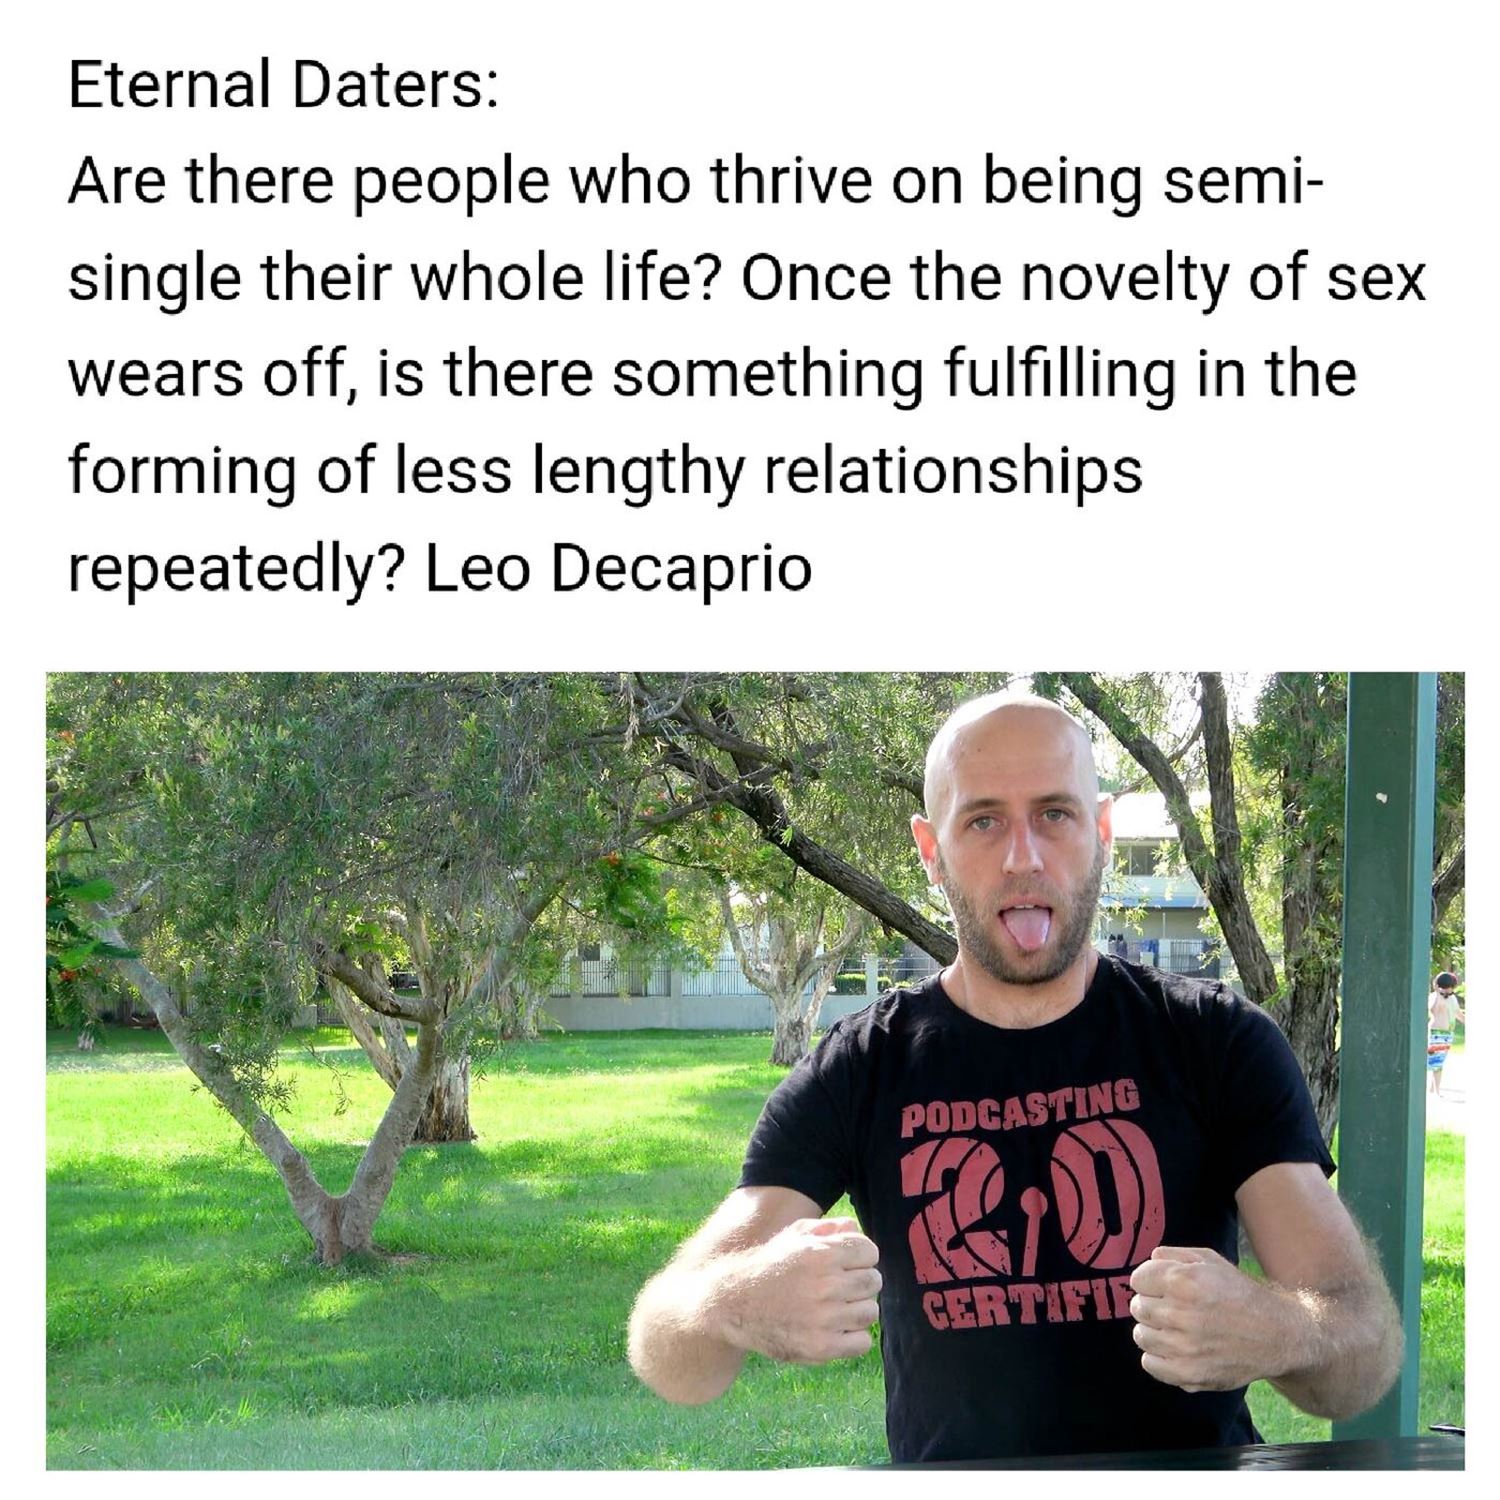 Eternal daters